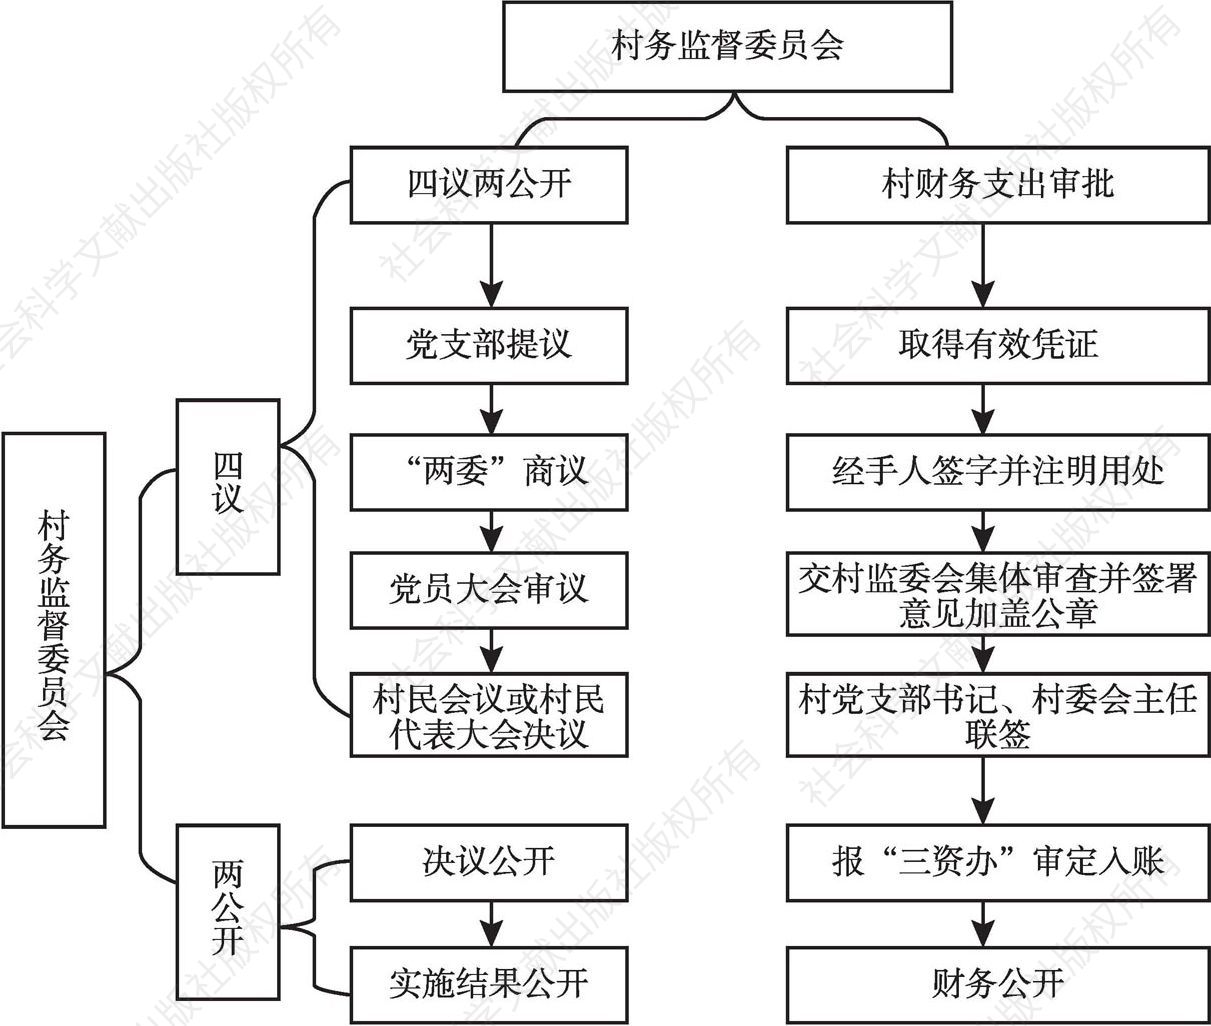 图1 偃师市村务监督委员会监督流程